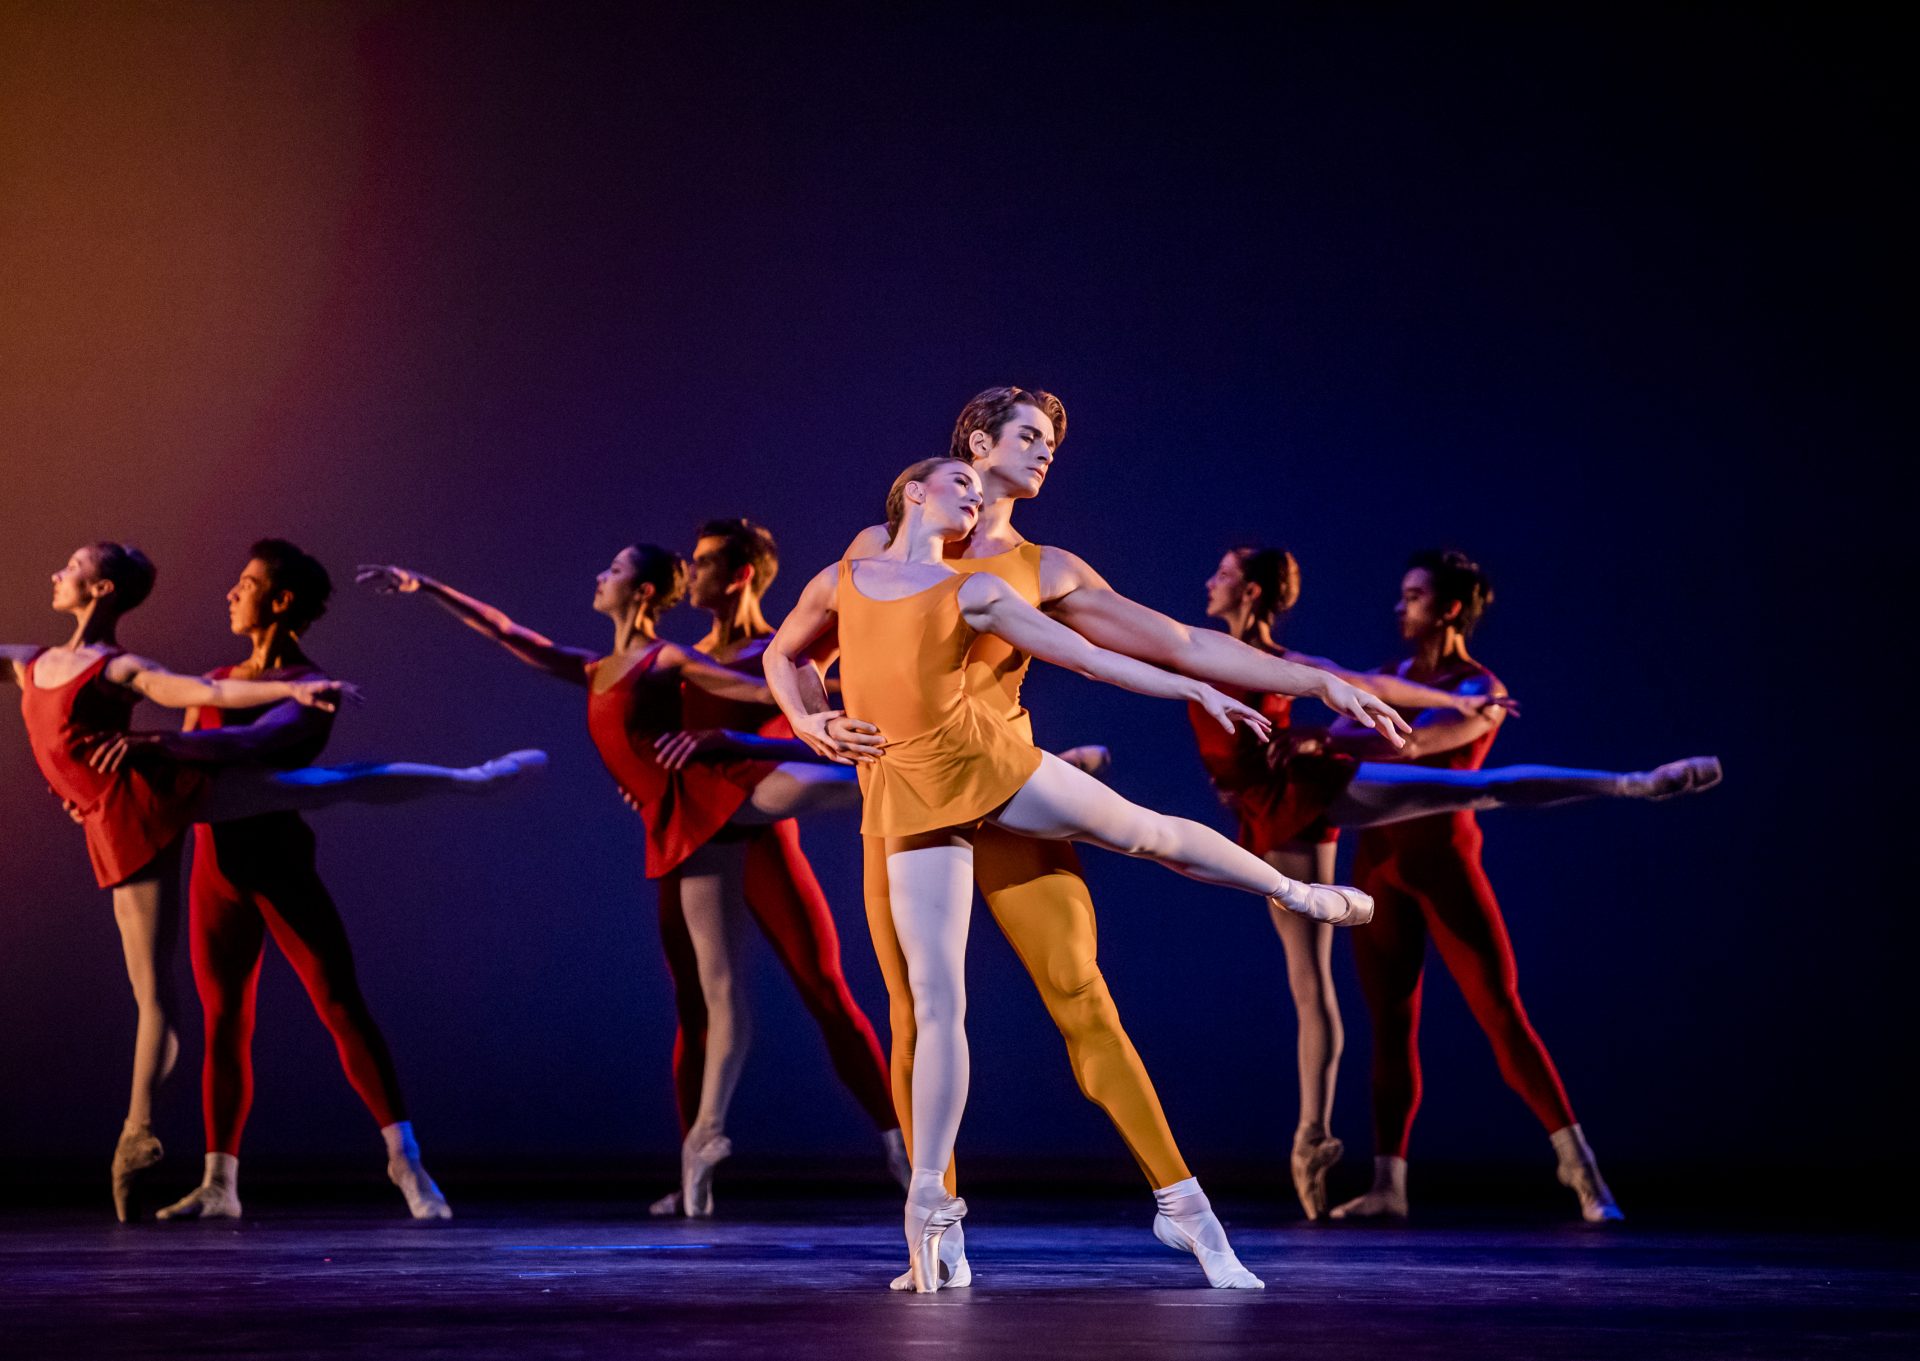 Al Teatro San Carlo due capolavori del balletto novecentesco dal 5 al 10 marzo